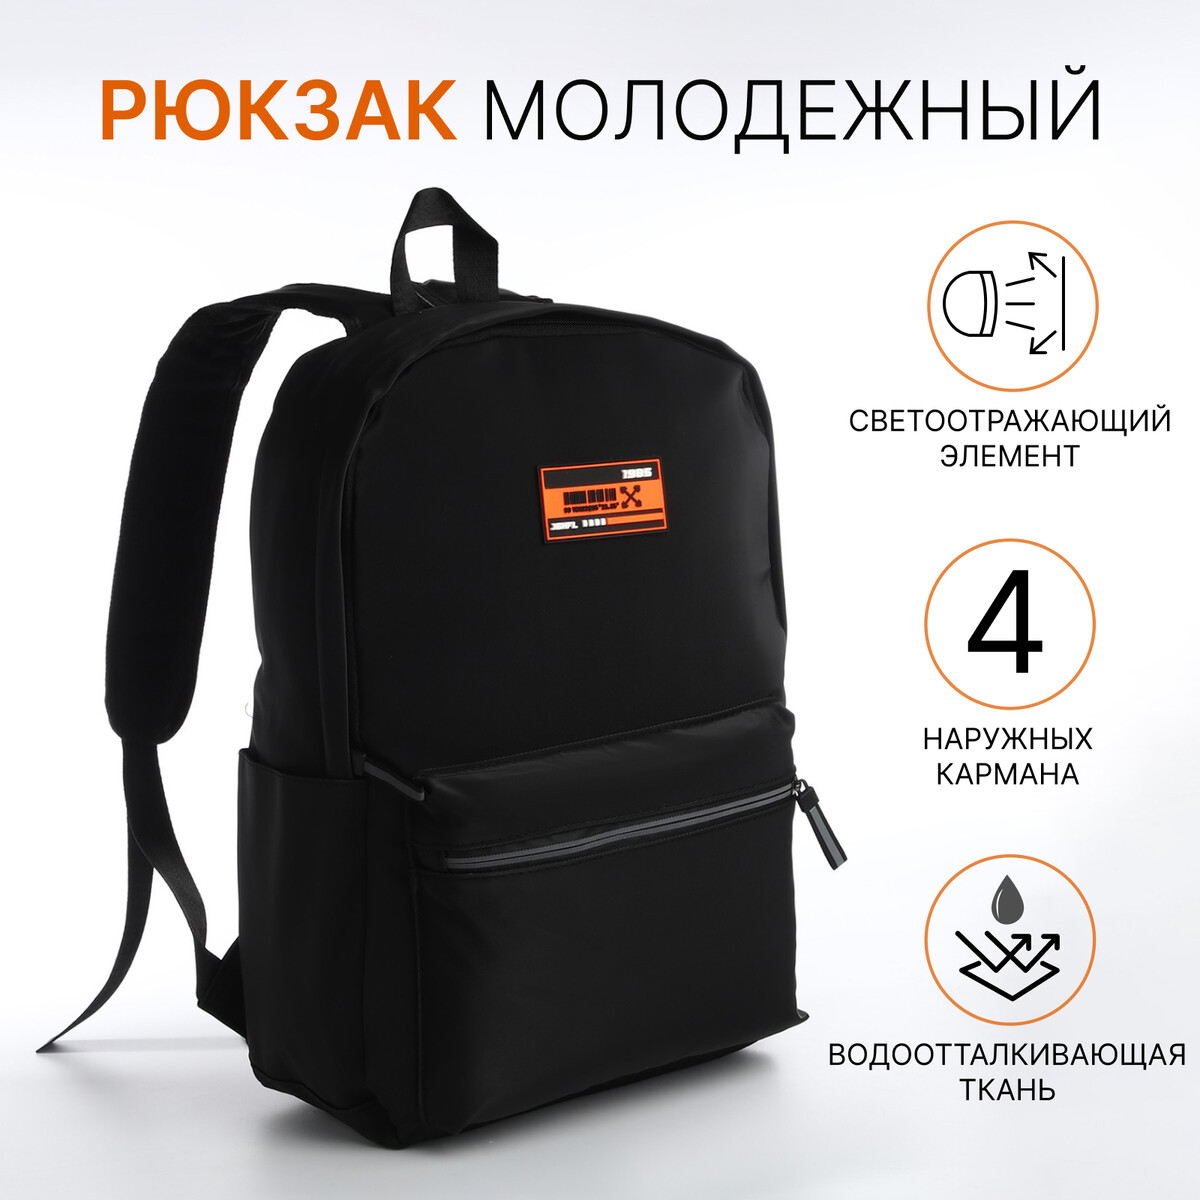 Рюкзак молодежный из текстиля на молнии, 4 кармана, цвет черный/оранжевый рюкзак молодежный из текстиля 2 отдела на молнии 3 кармана оранжевый